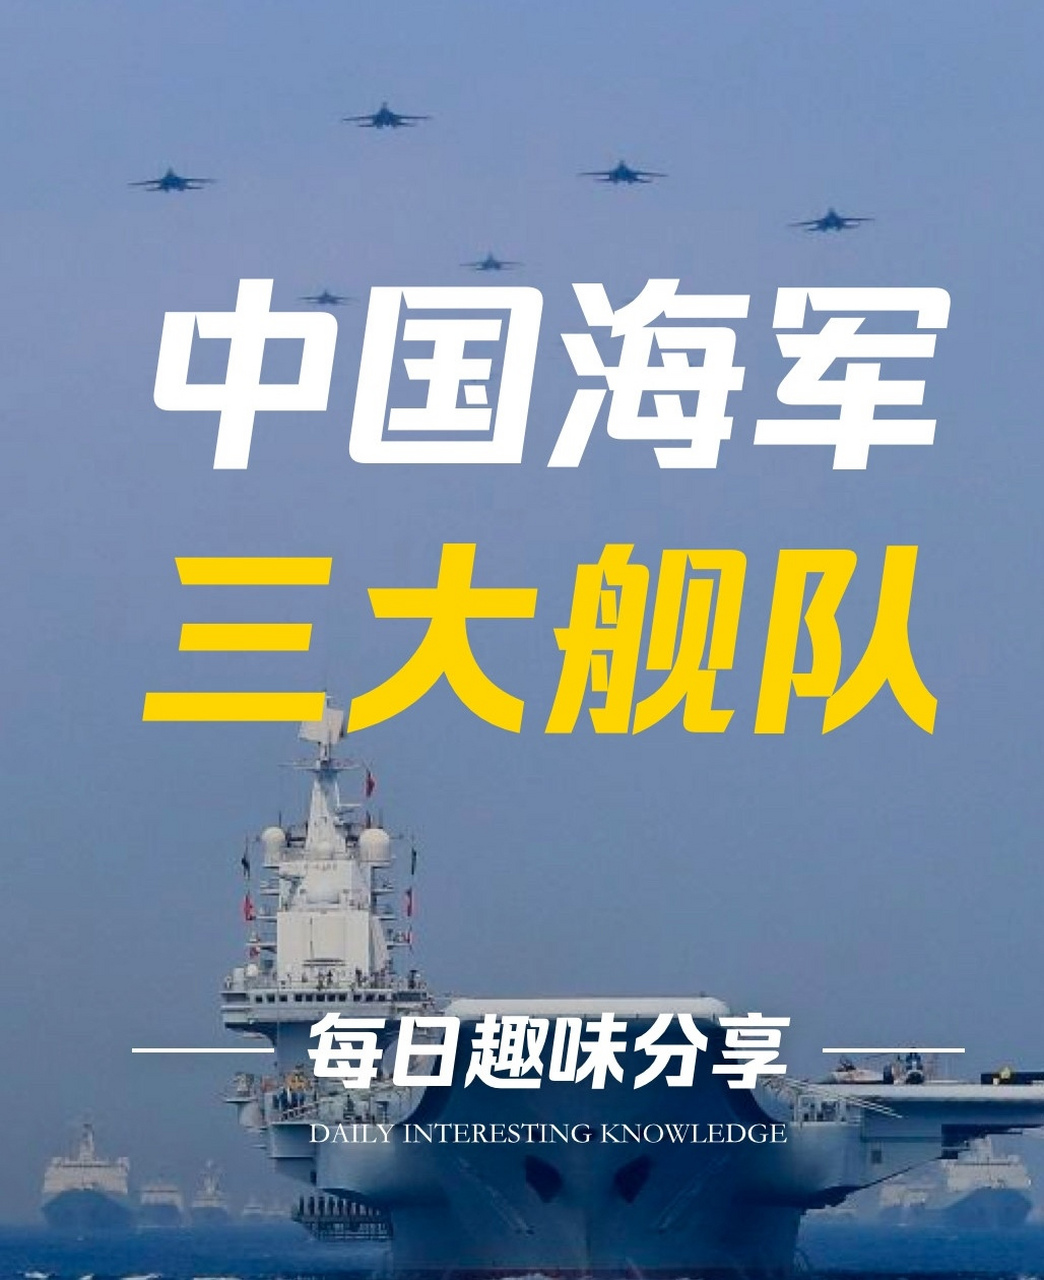 中国海军三大舰队编制图片